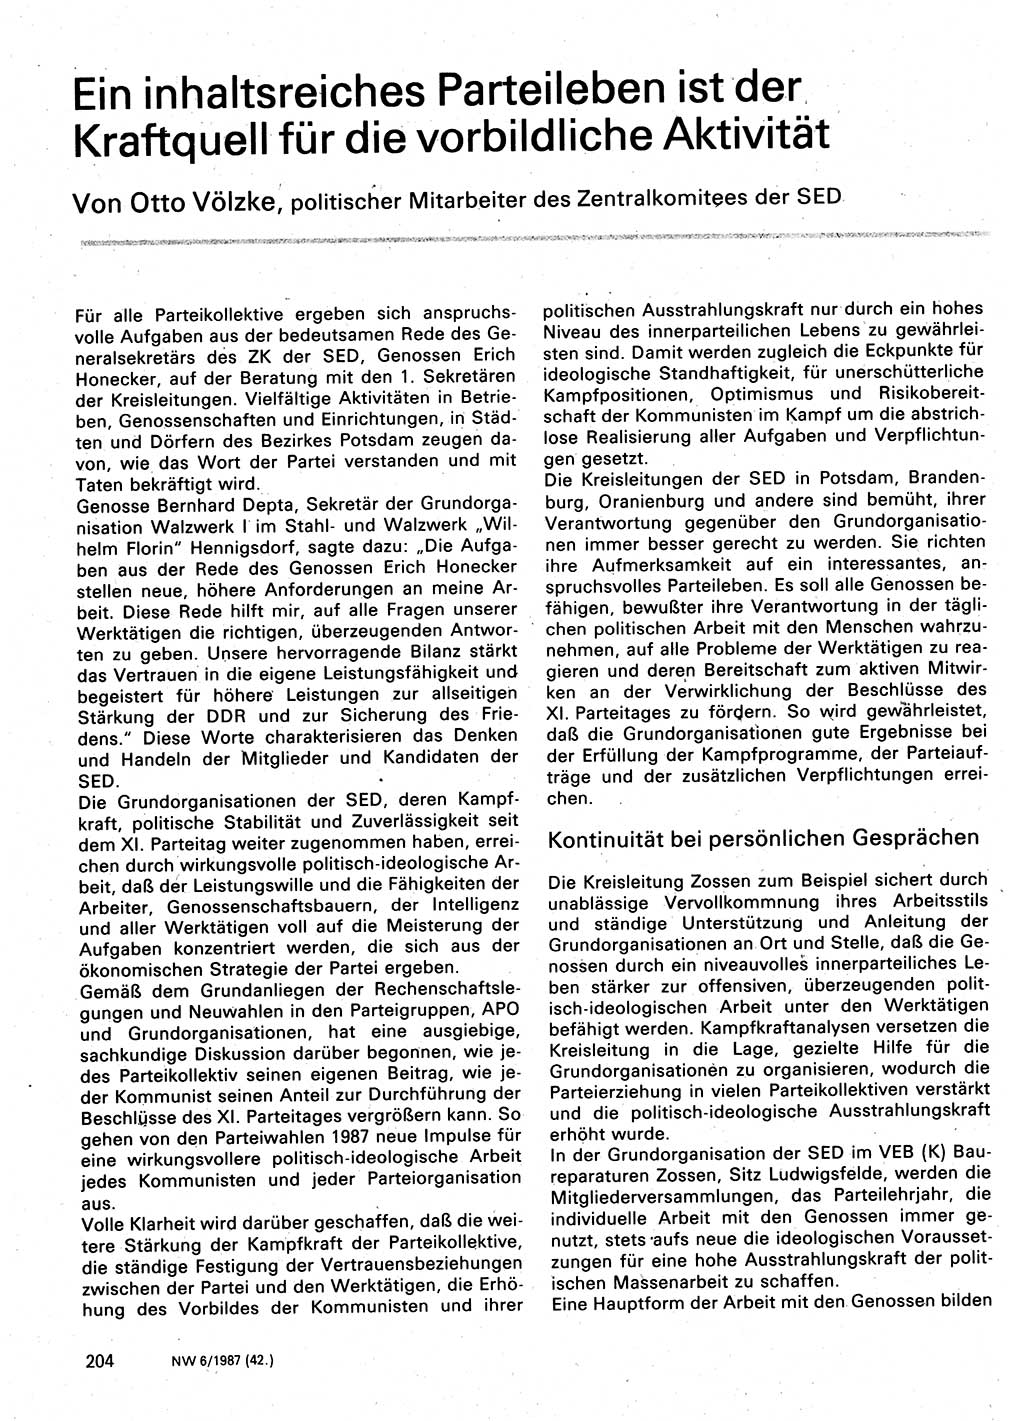 Neuer Weg (NW), Organ des Zentralkomitees (ZK) der SED (Sozialistische Einheitspartei Deutschlands) für Fragen des Parteilebens, 42. Jahrgang [Deutsche Demokratische Republik (DDR)] 1987, Seite 204 (NW ZK SED DDR 1987, S. 204)